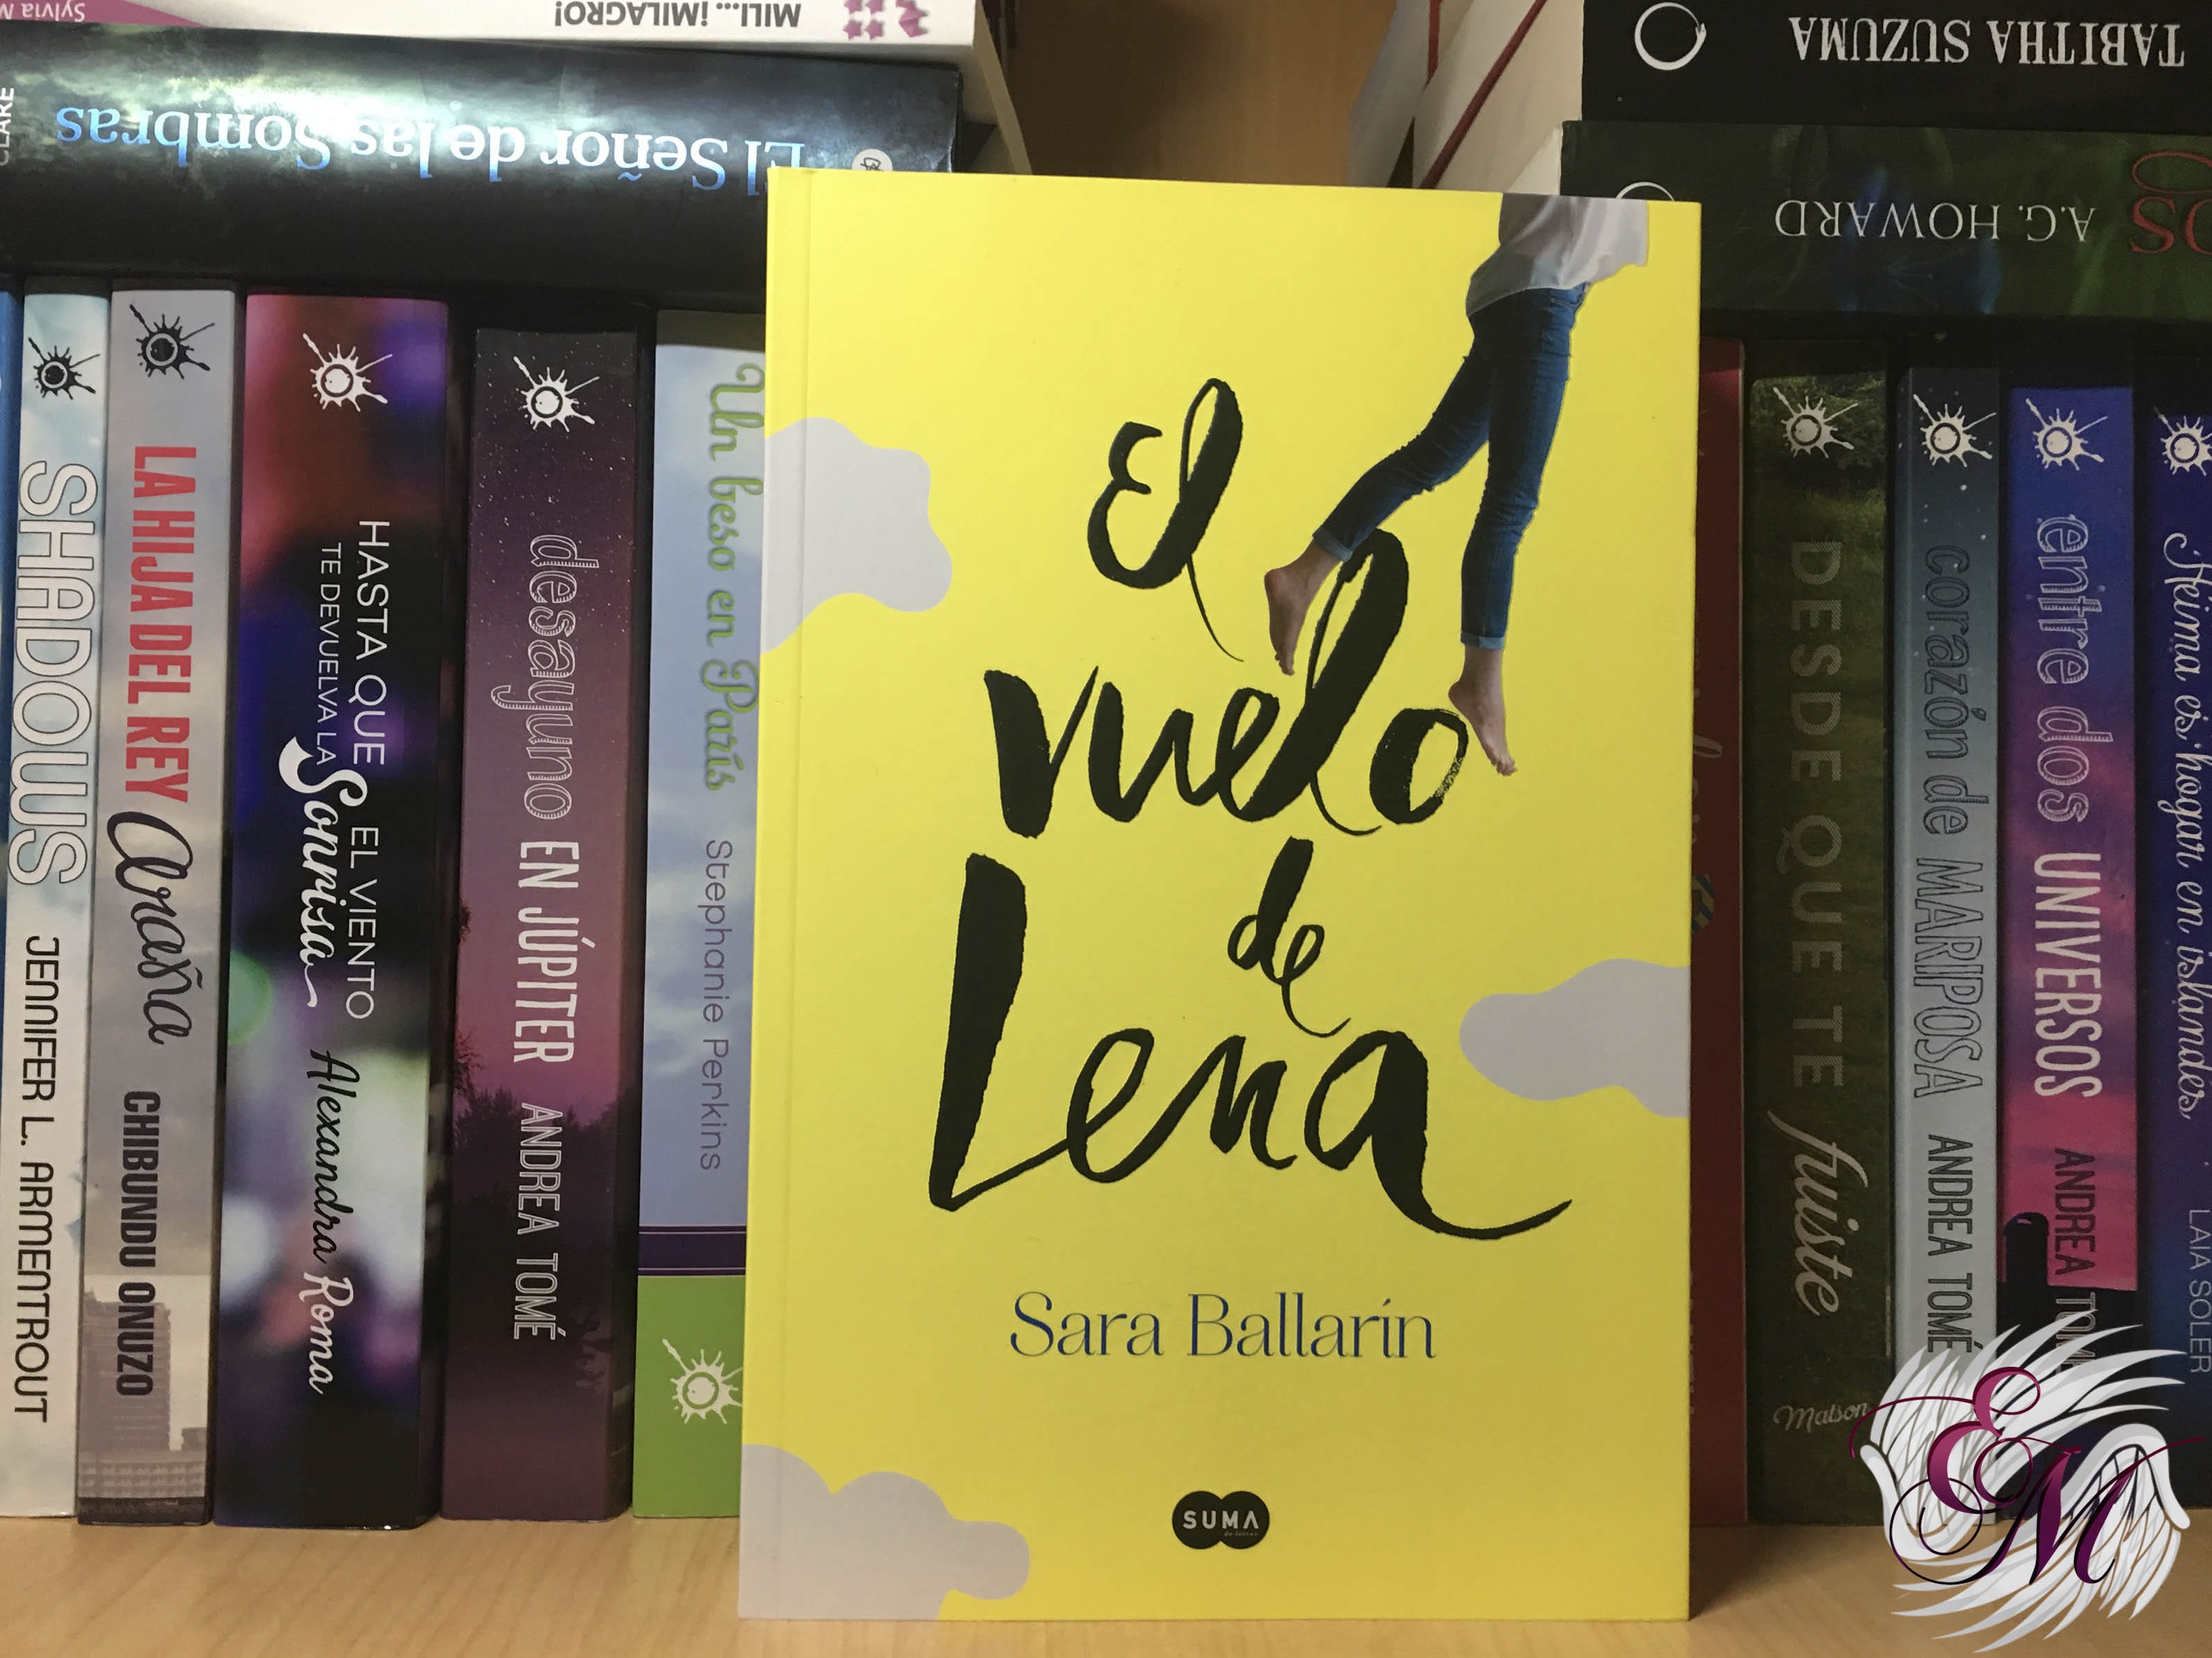 El vuelo de Lena, de Sara Ballarín - Reseña